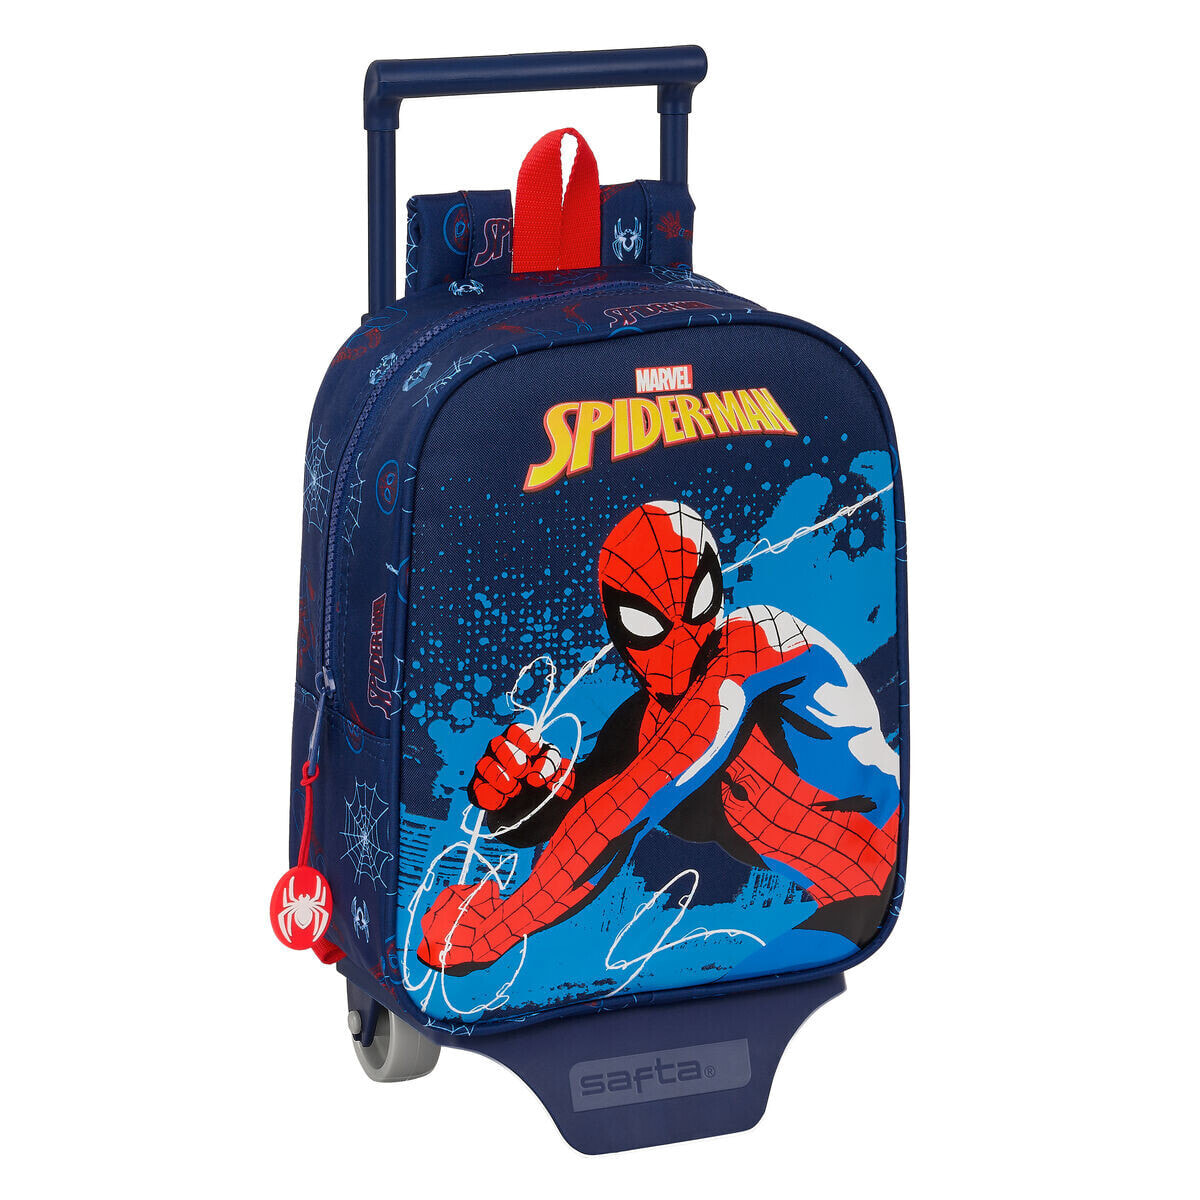 School Rucksack with Wheels Spider-Man Neon Navy Blue 22 x 27 x 10 cm